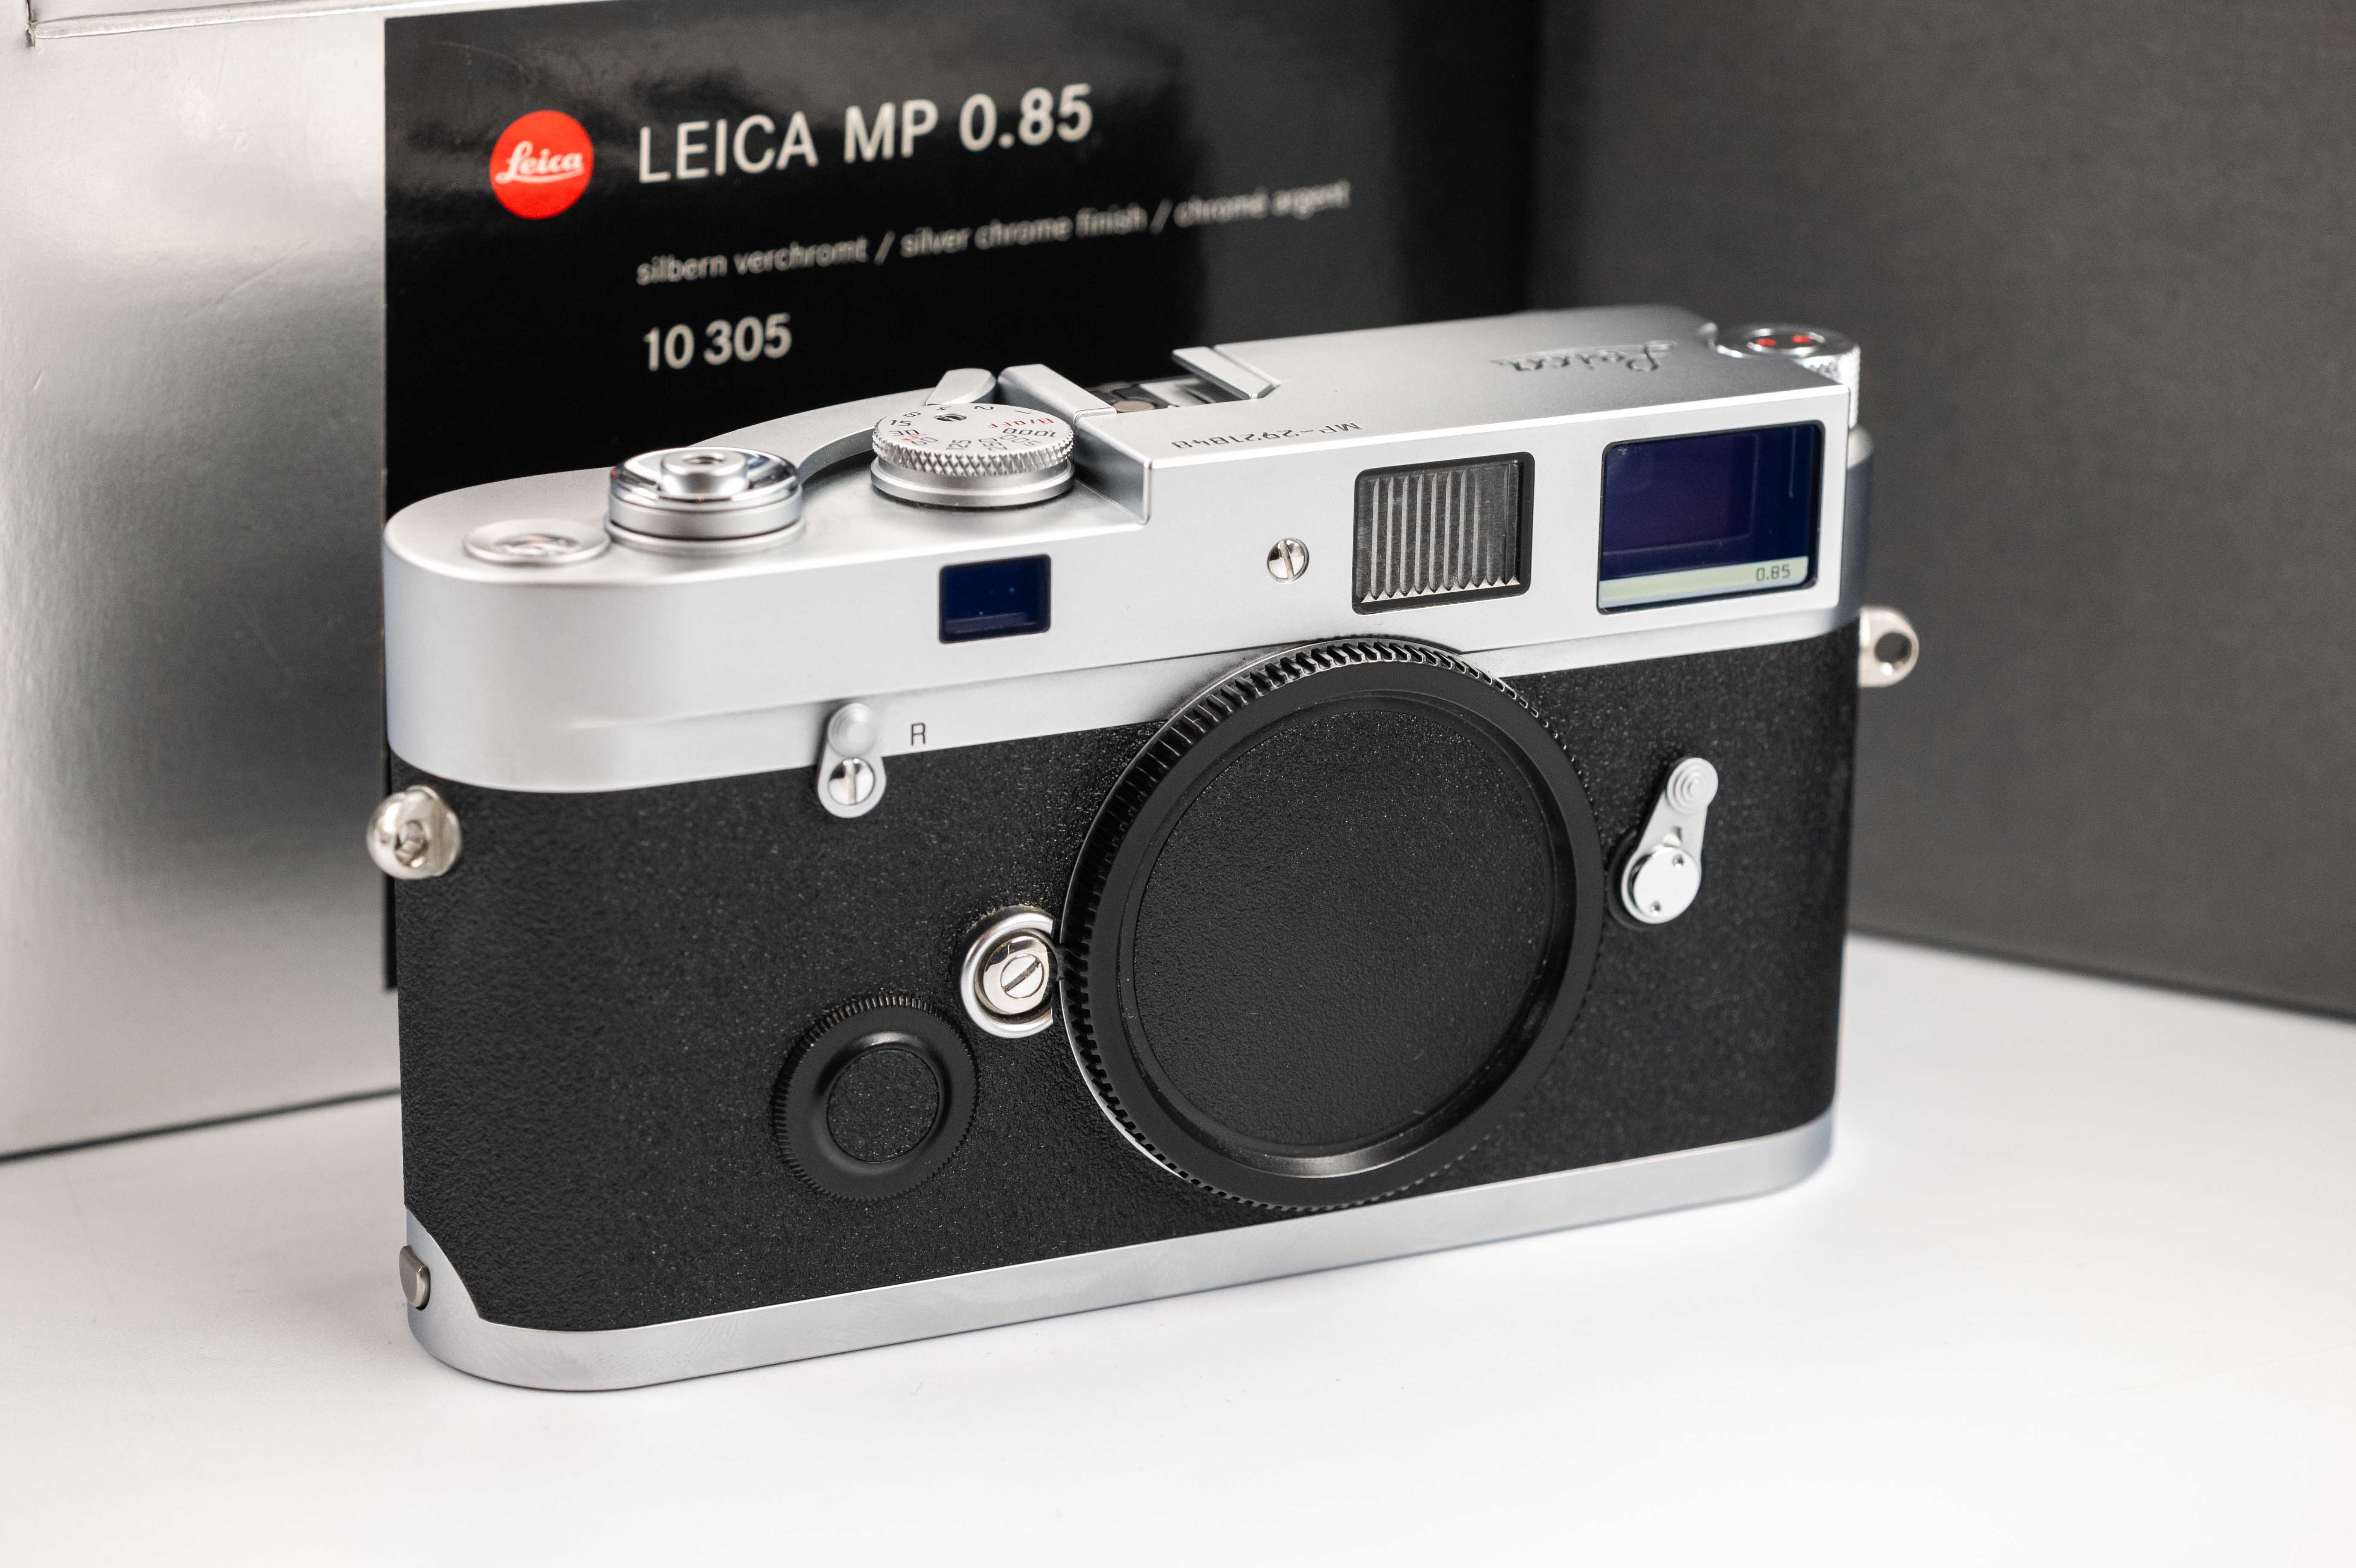 Leica MP 0.85x Silver Chrome 10305